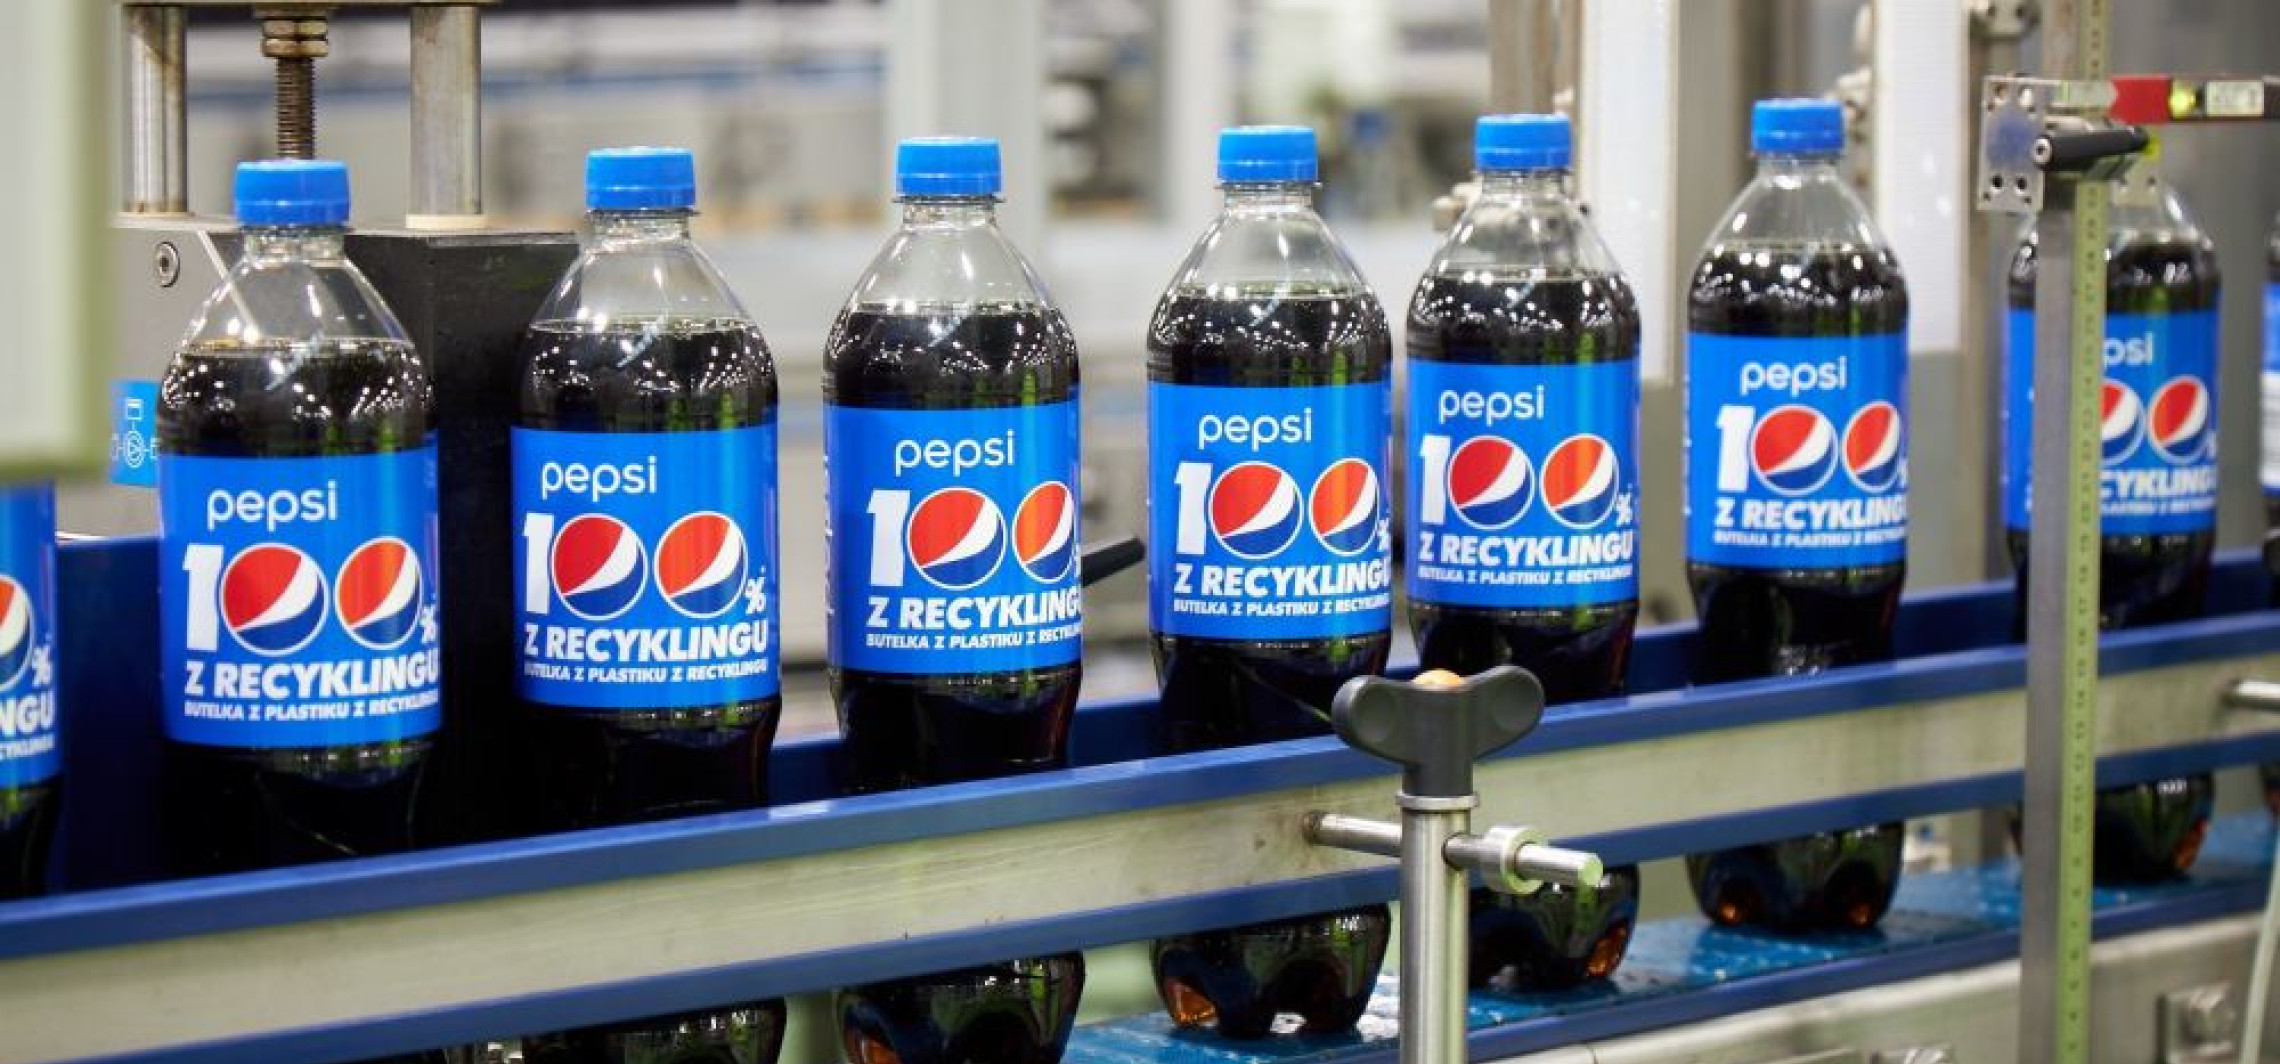 Kraj - Realizacja strategii PepsiCo pep+ zgodnie z planem